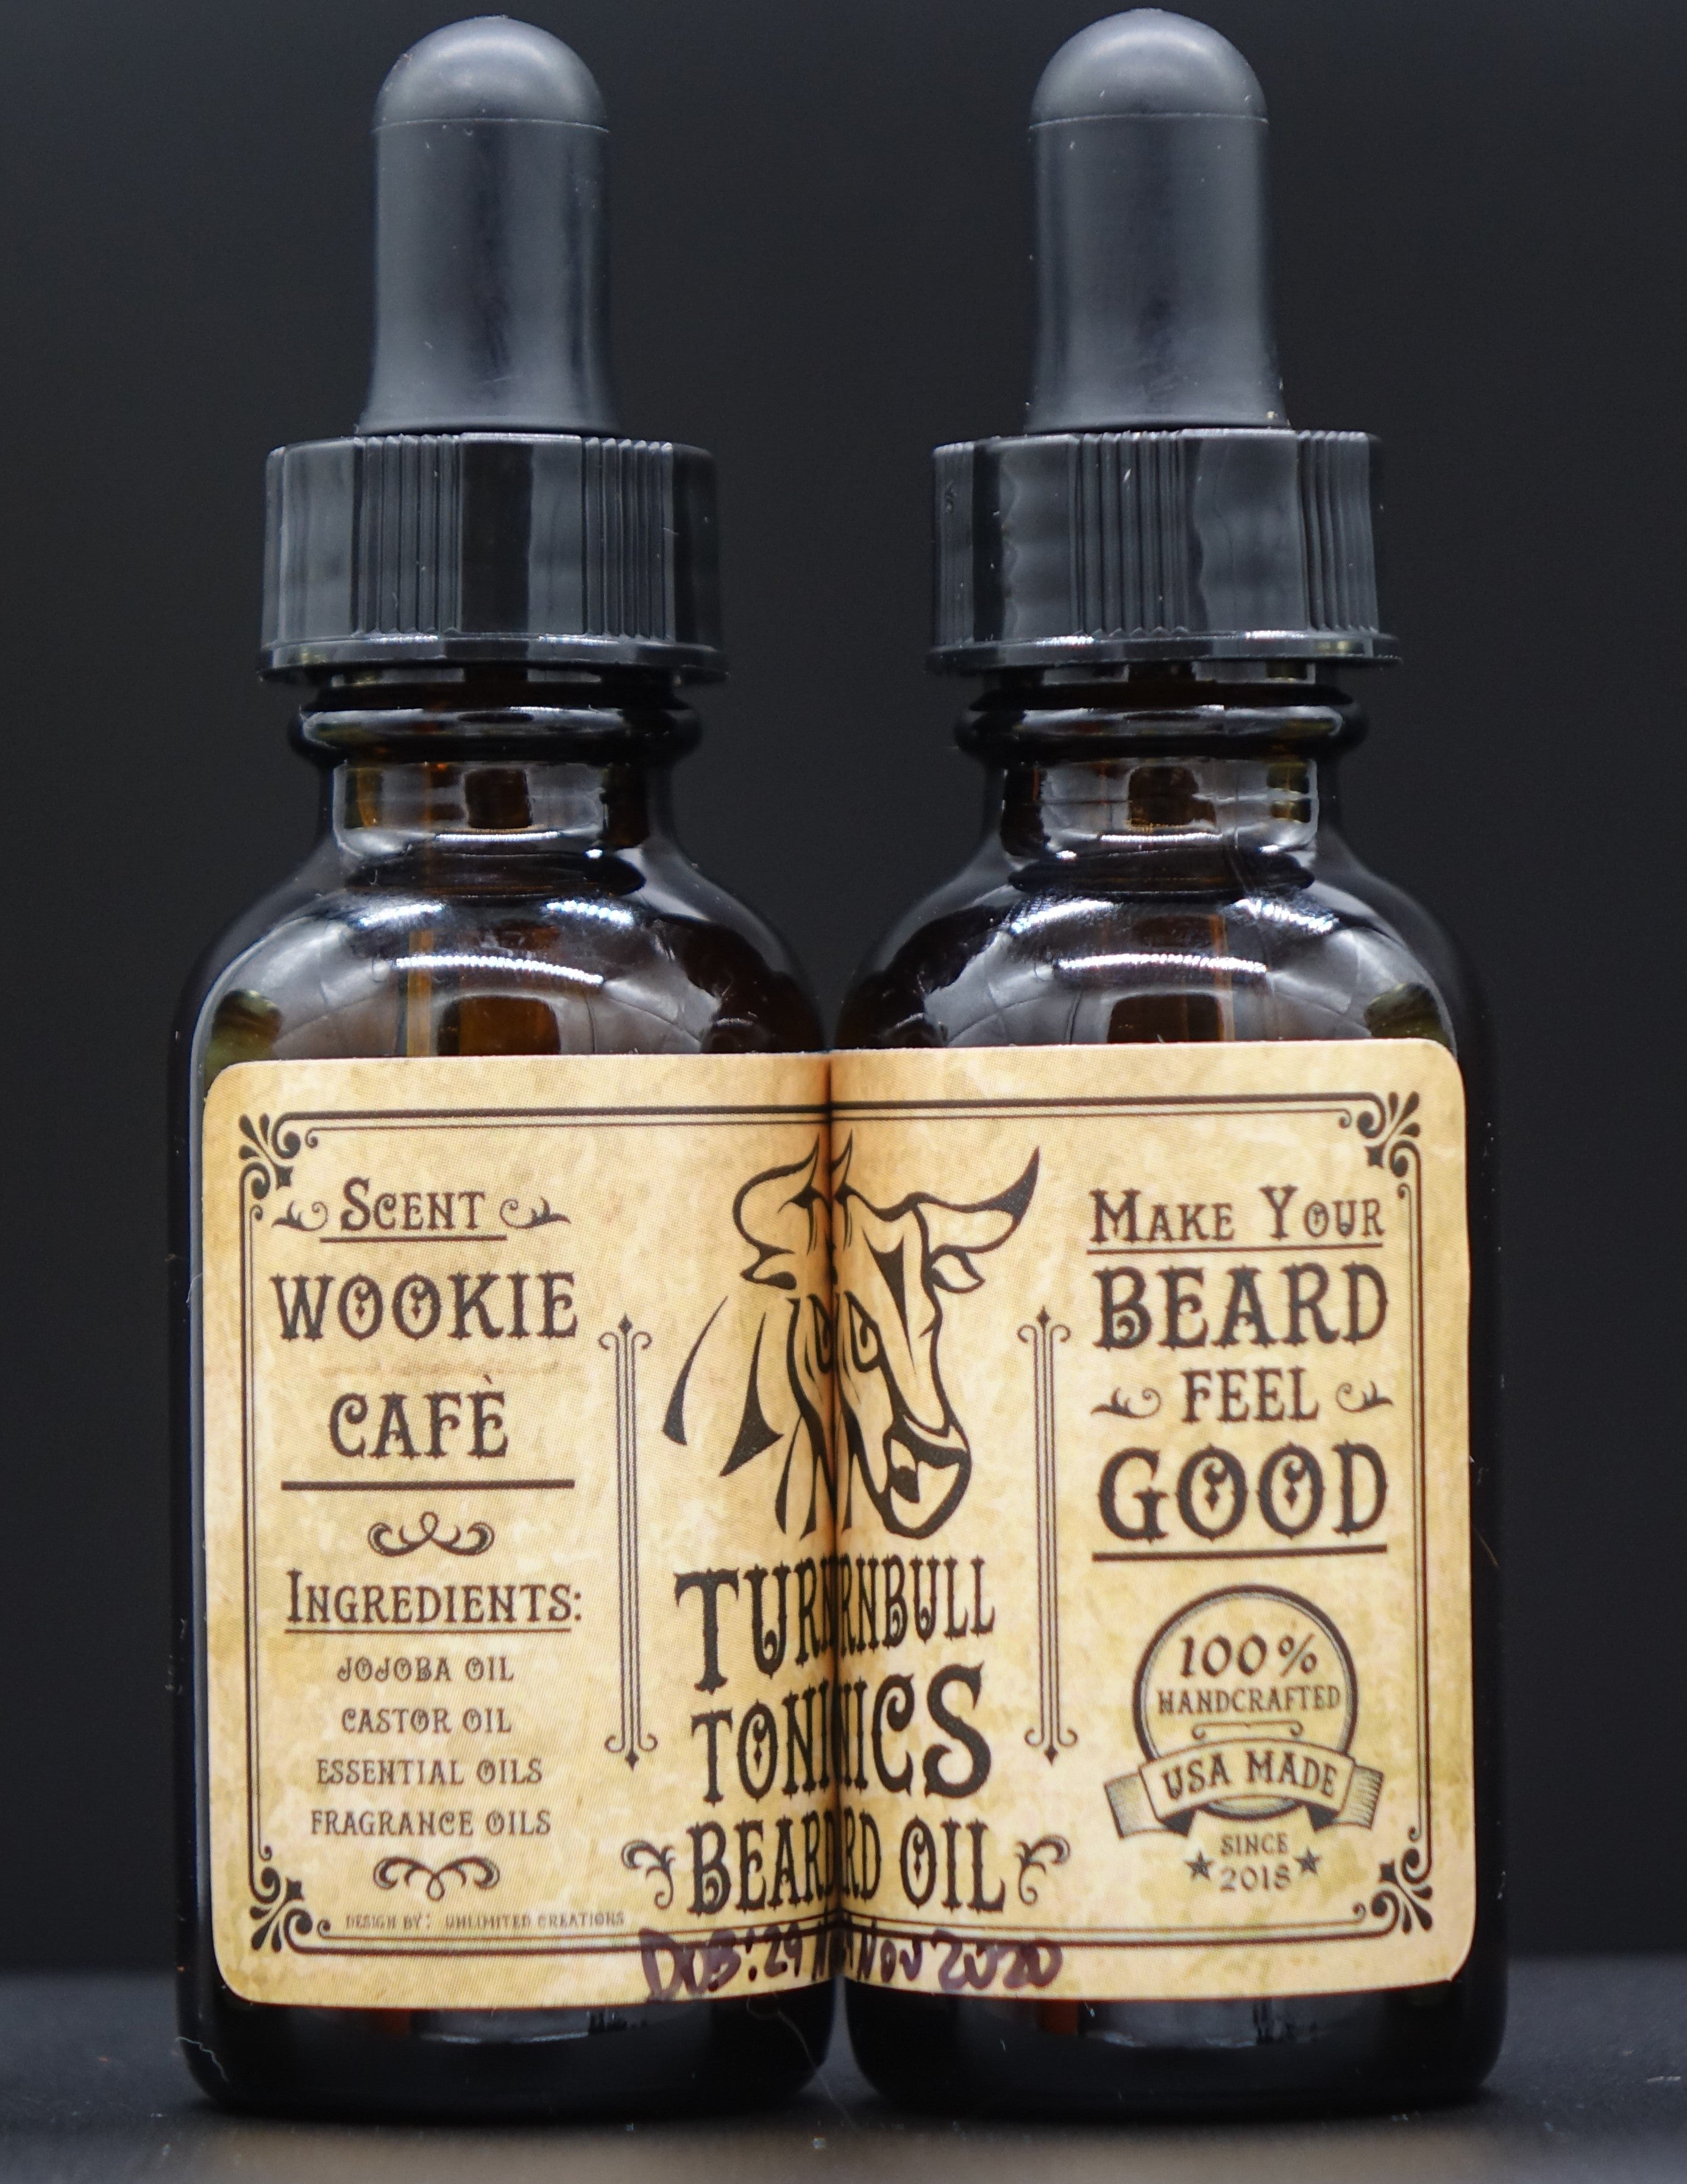 Wookie Cafe Beard Oil – Turnbull Tonics